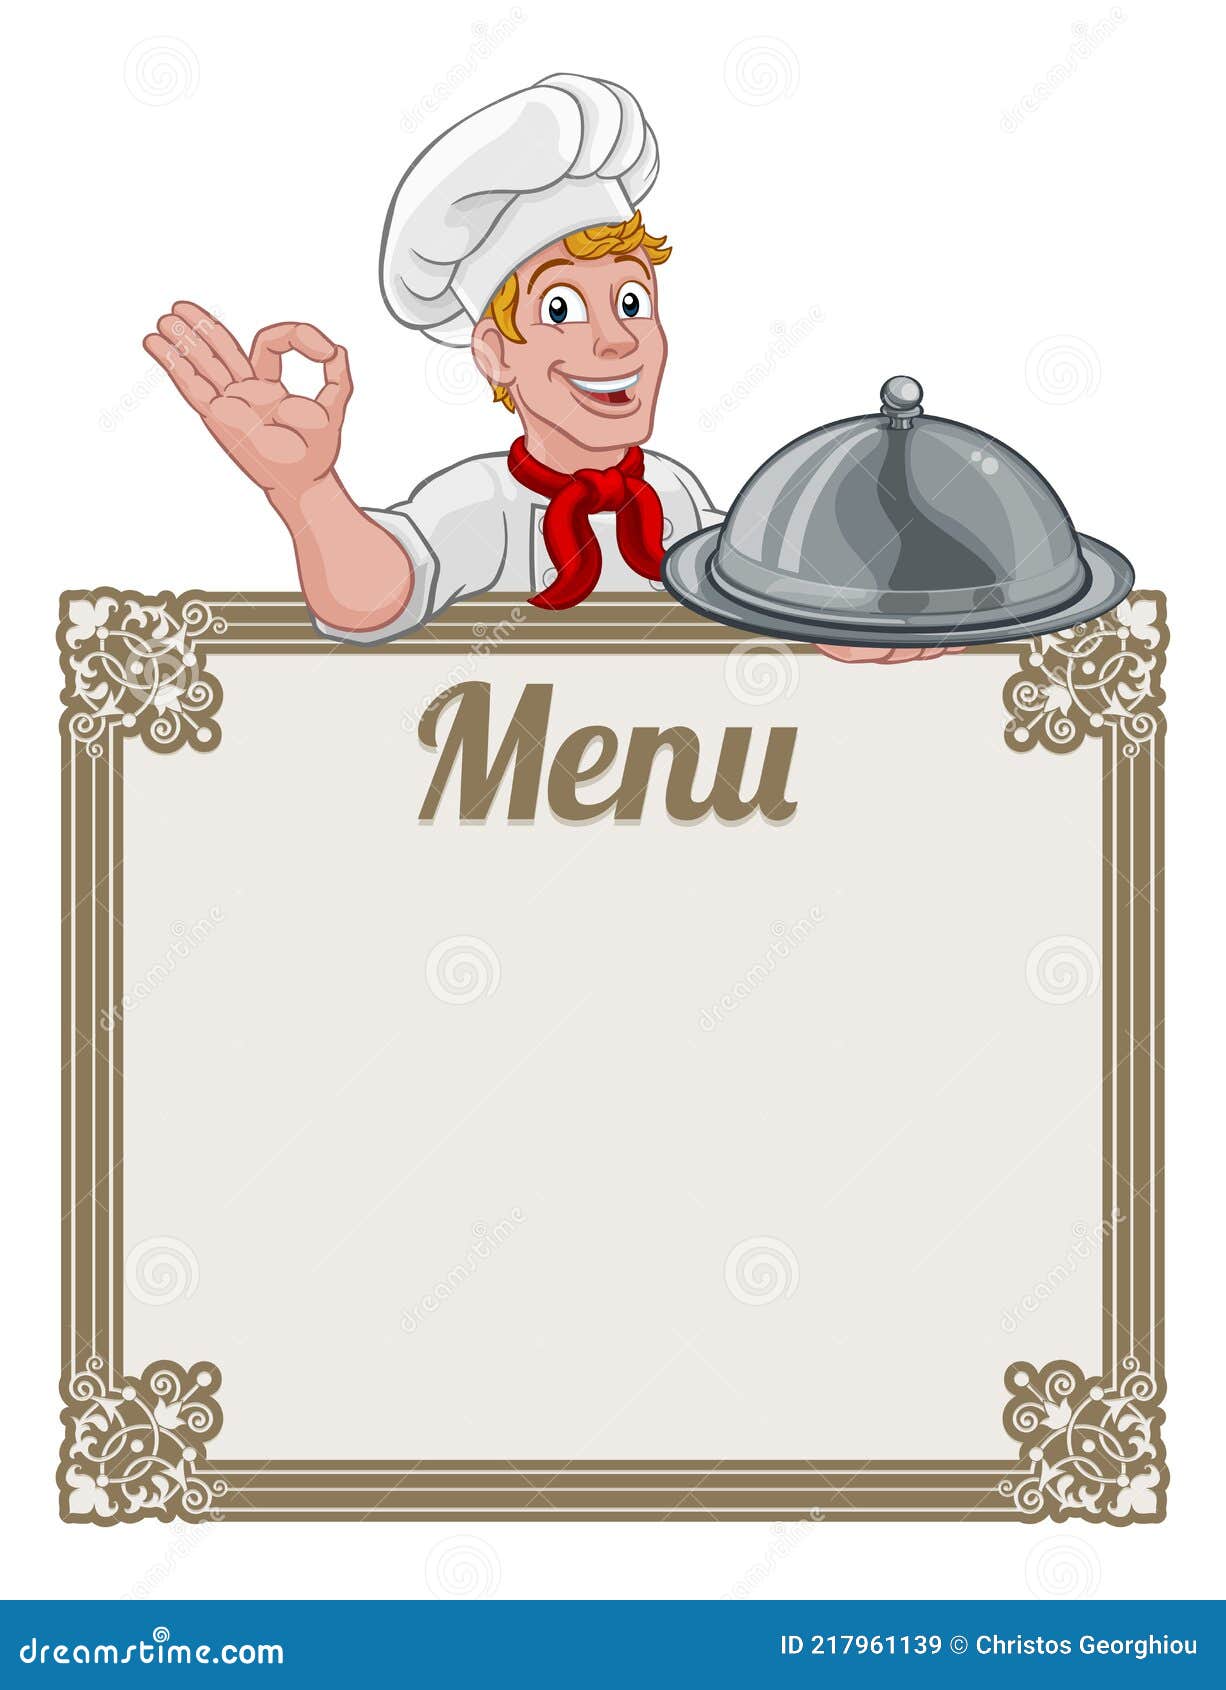 Повар кук меню на неделю. Повар Кук. Повар с меню. Шаблон грамоты лучший повар мультяшные. Фон для презентации рамка столовая меню повар.